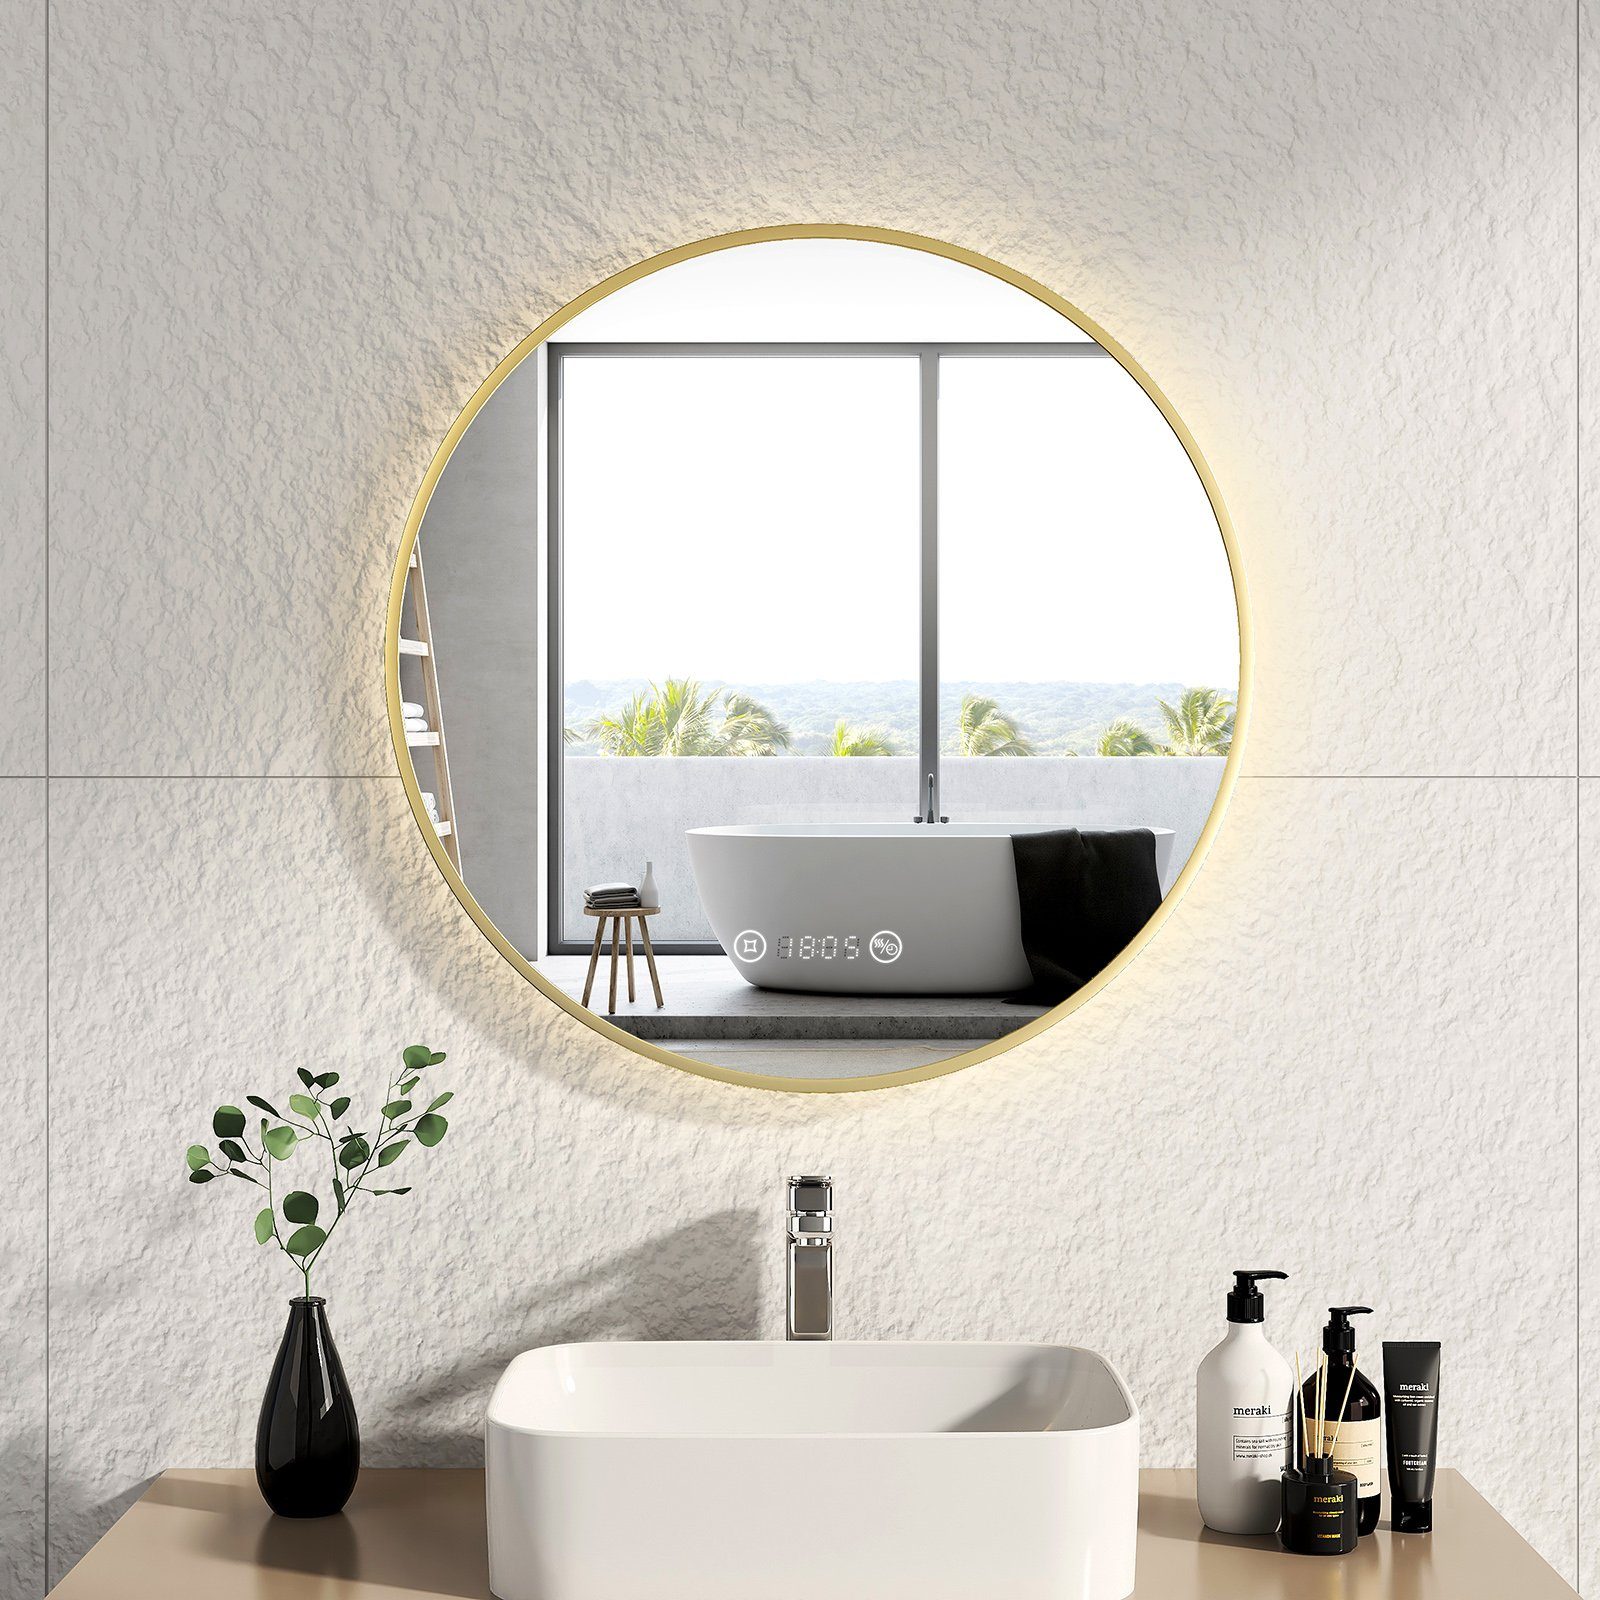 EMKE Badspiegel EMKE LED Badspiegel Rund Spiegel mit Beleuchtung Gold, mit Touch, Antibeschlage, Uhr, Temperatur, Dimmbar, Memory-Funktion